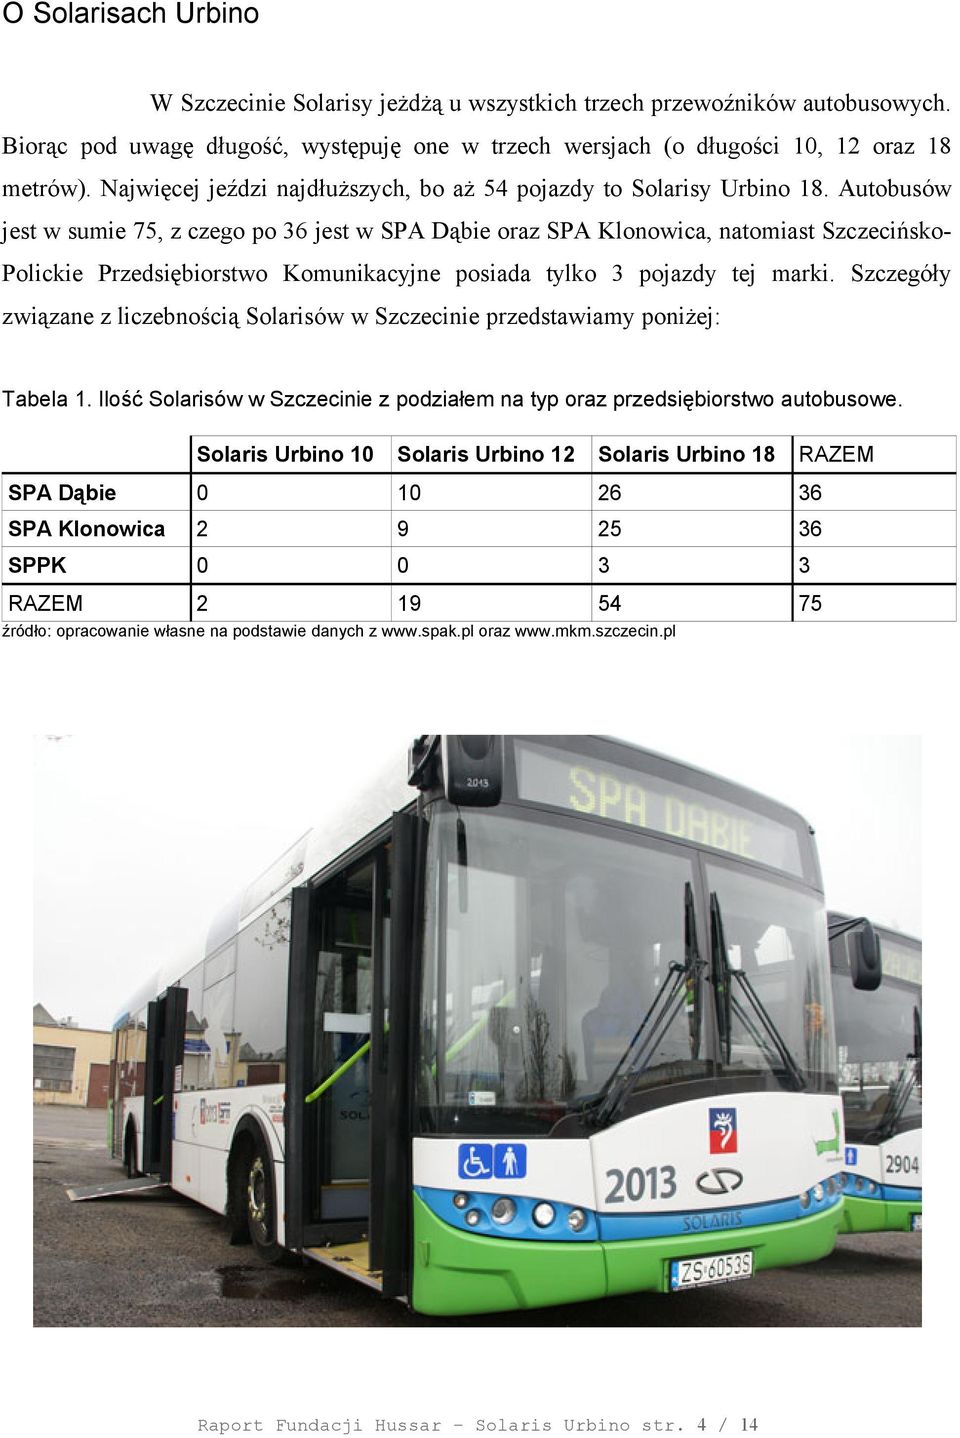 Autobusów jest w sumie 75, z czego po 36 jest w SPA Dąbie oraz SPA Klonowica, natomiast SzczecińskoPolickie Przedsiębiorstwo Komunikacyjne posiada tylko 3 pojazdy tej marki.